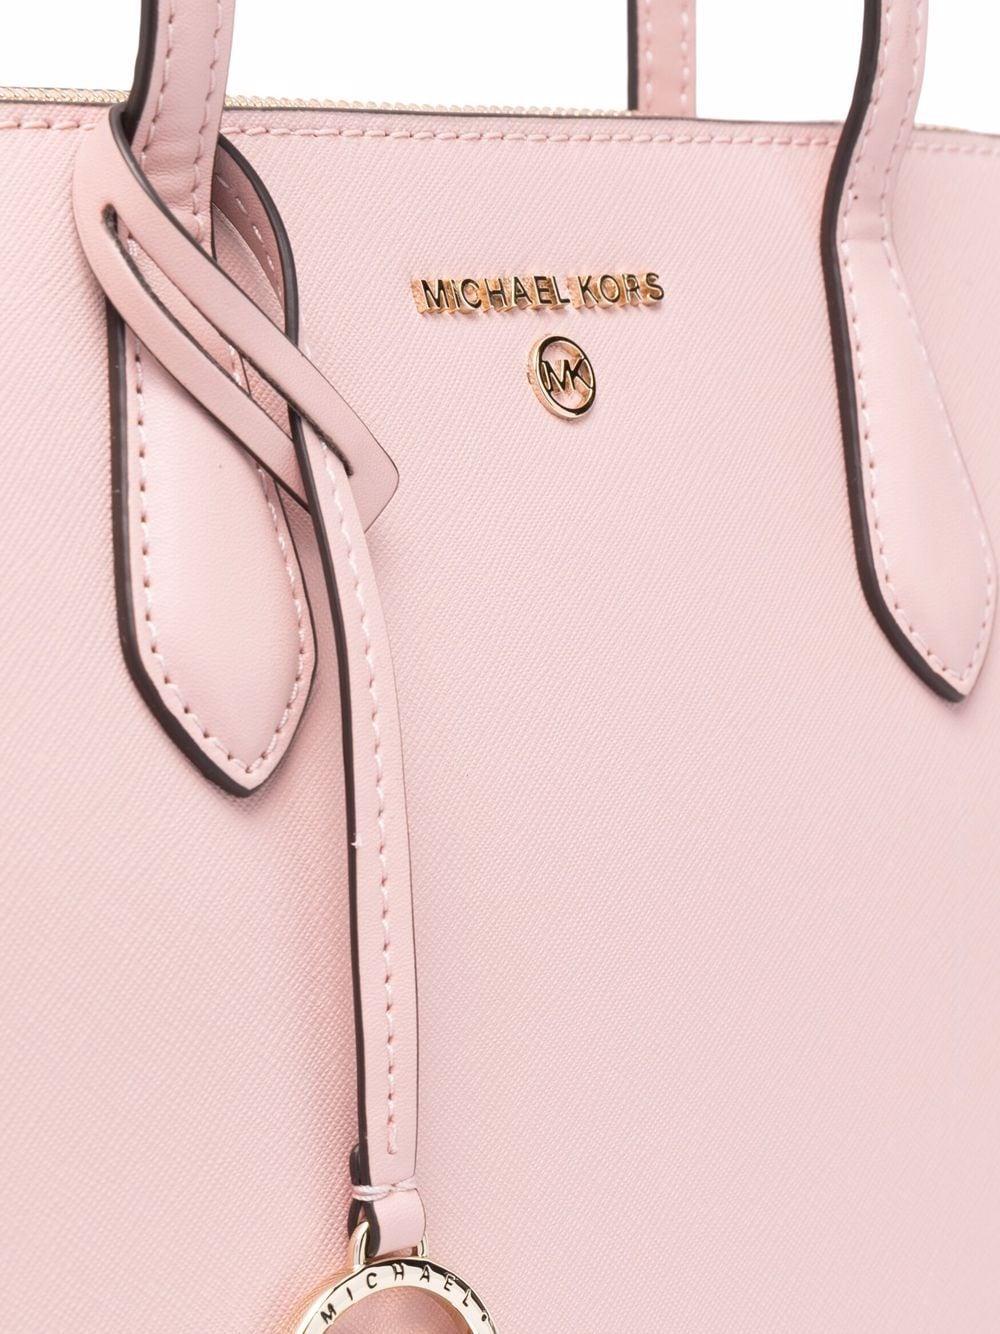 MICHAEL Michael Kors Medium Marilyn Tote Bag in Pink